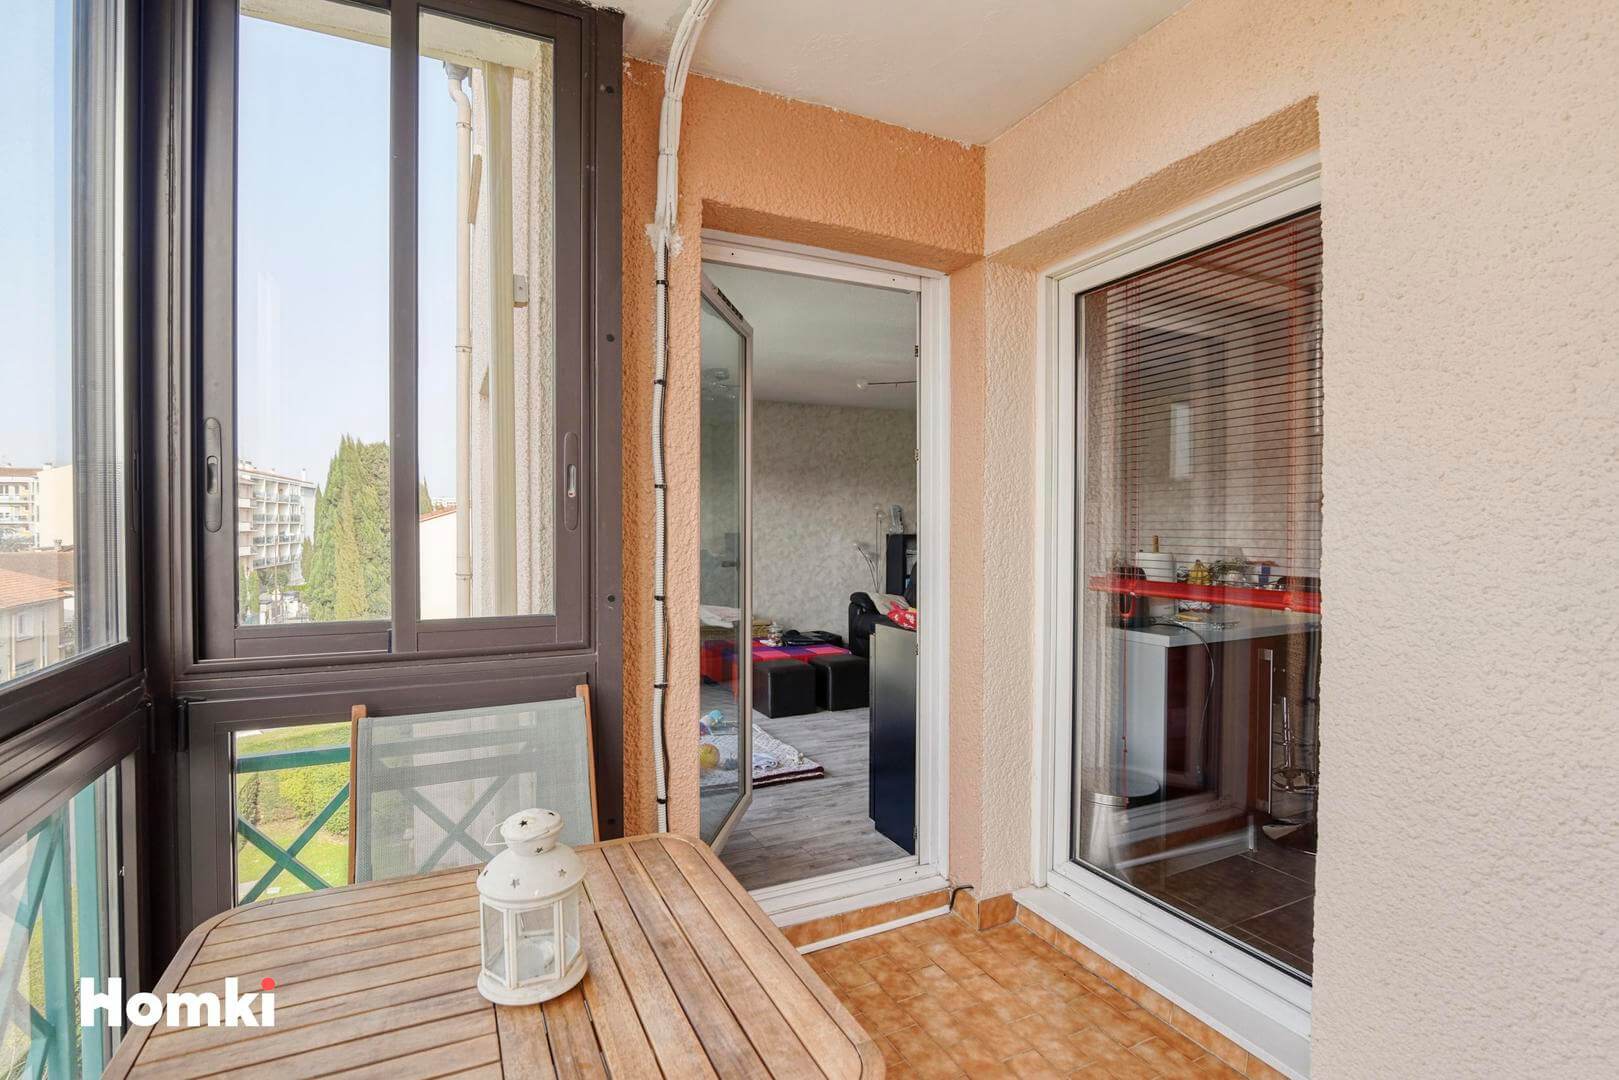 Homki - Vente Appartement  de 66.0 m² à Toulouse 31300